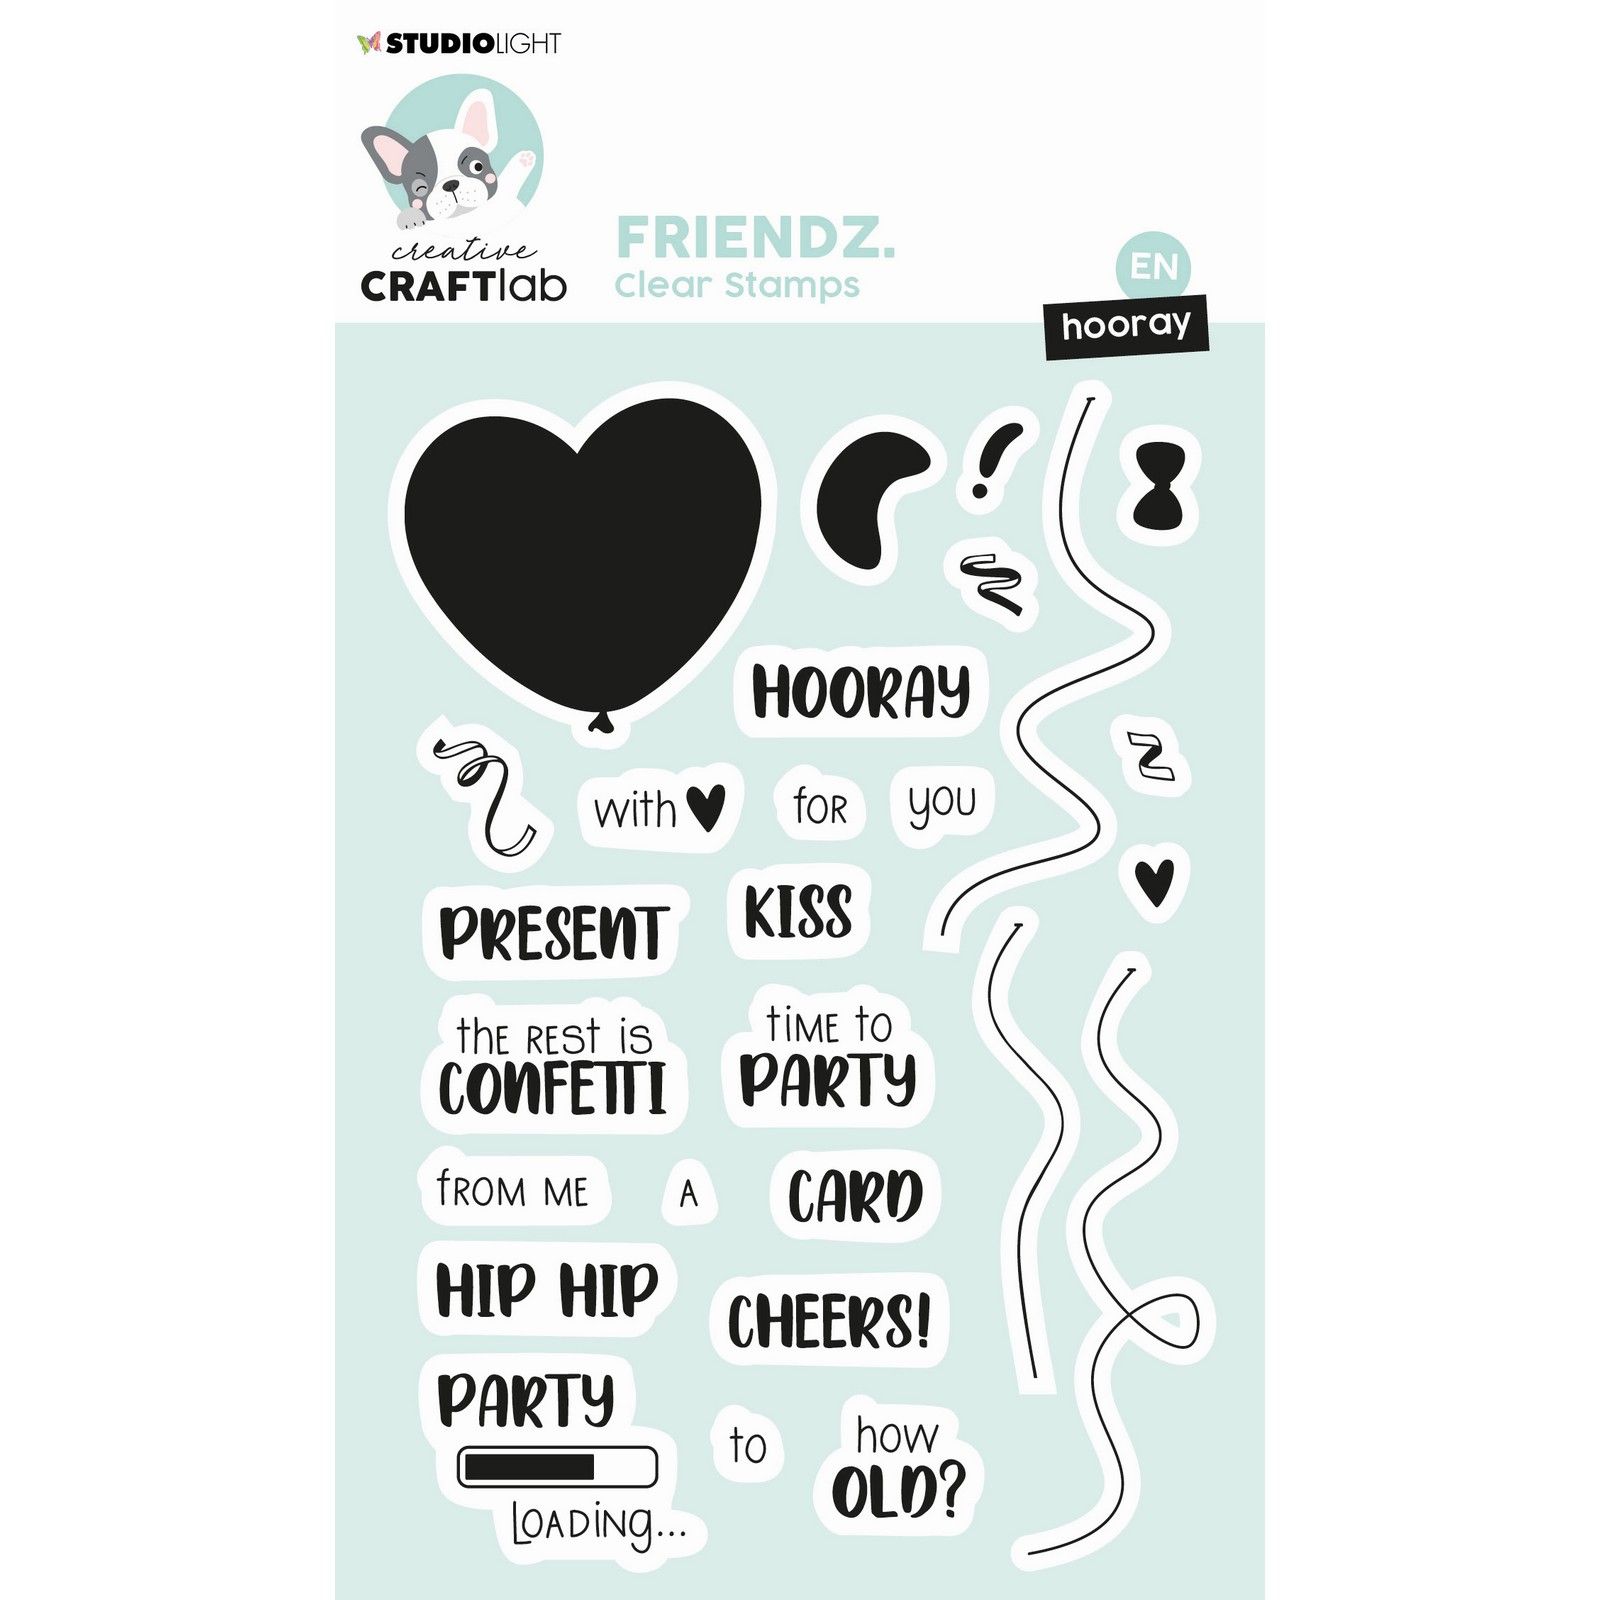 Creative Craftlab • Friendz Clear Stempel Engelse Tekst Hooray